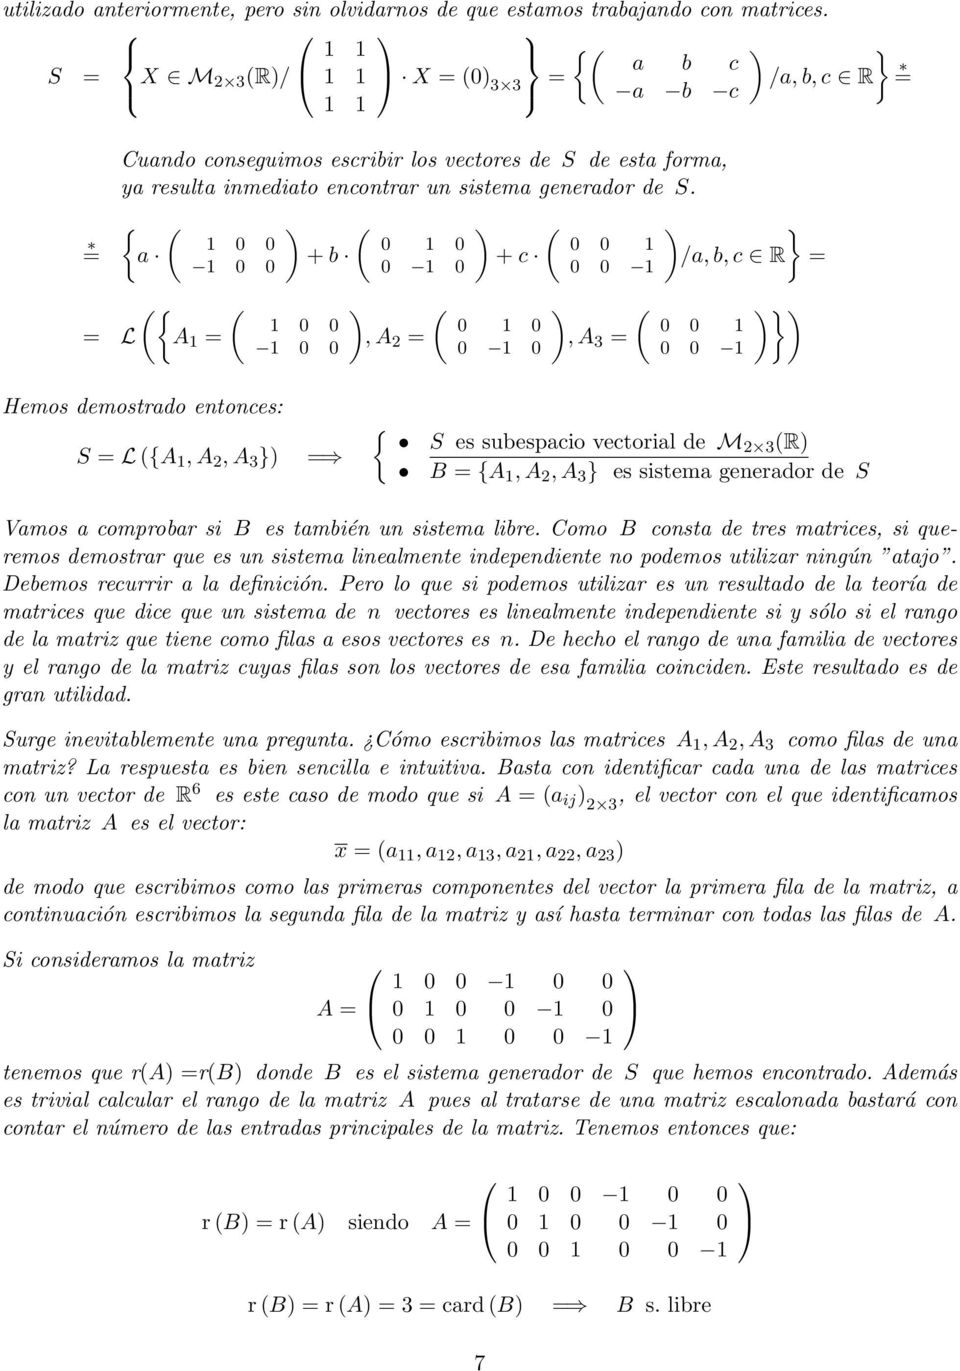 { ( a 0 0 0 0 ({ ( = L A = + b 0 0 0 0 0 0 0 0, A 2 = + c 0 0 0 0 0 0 0 0, A 3 = ) /a, b, c R = 0 0 0 0 )) Hemos demostrado entonces: S = L ({A, A 2, A 3 ) = { S es subespacio vectorial de M2 3 (R) B